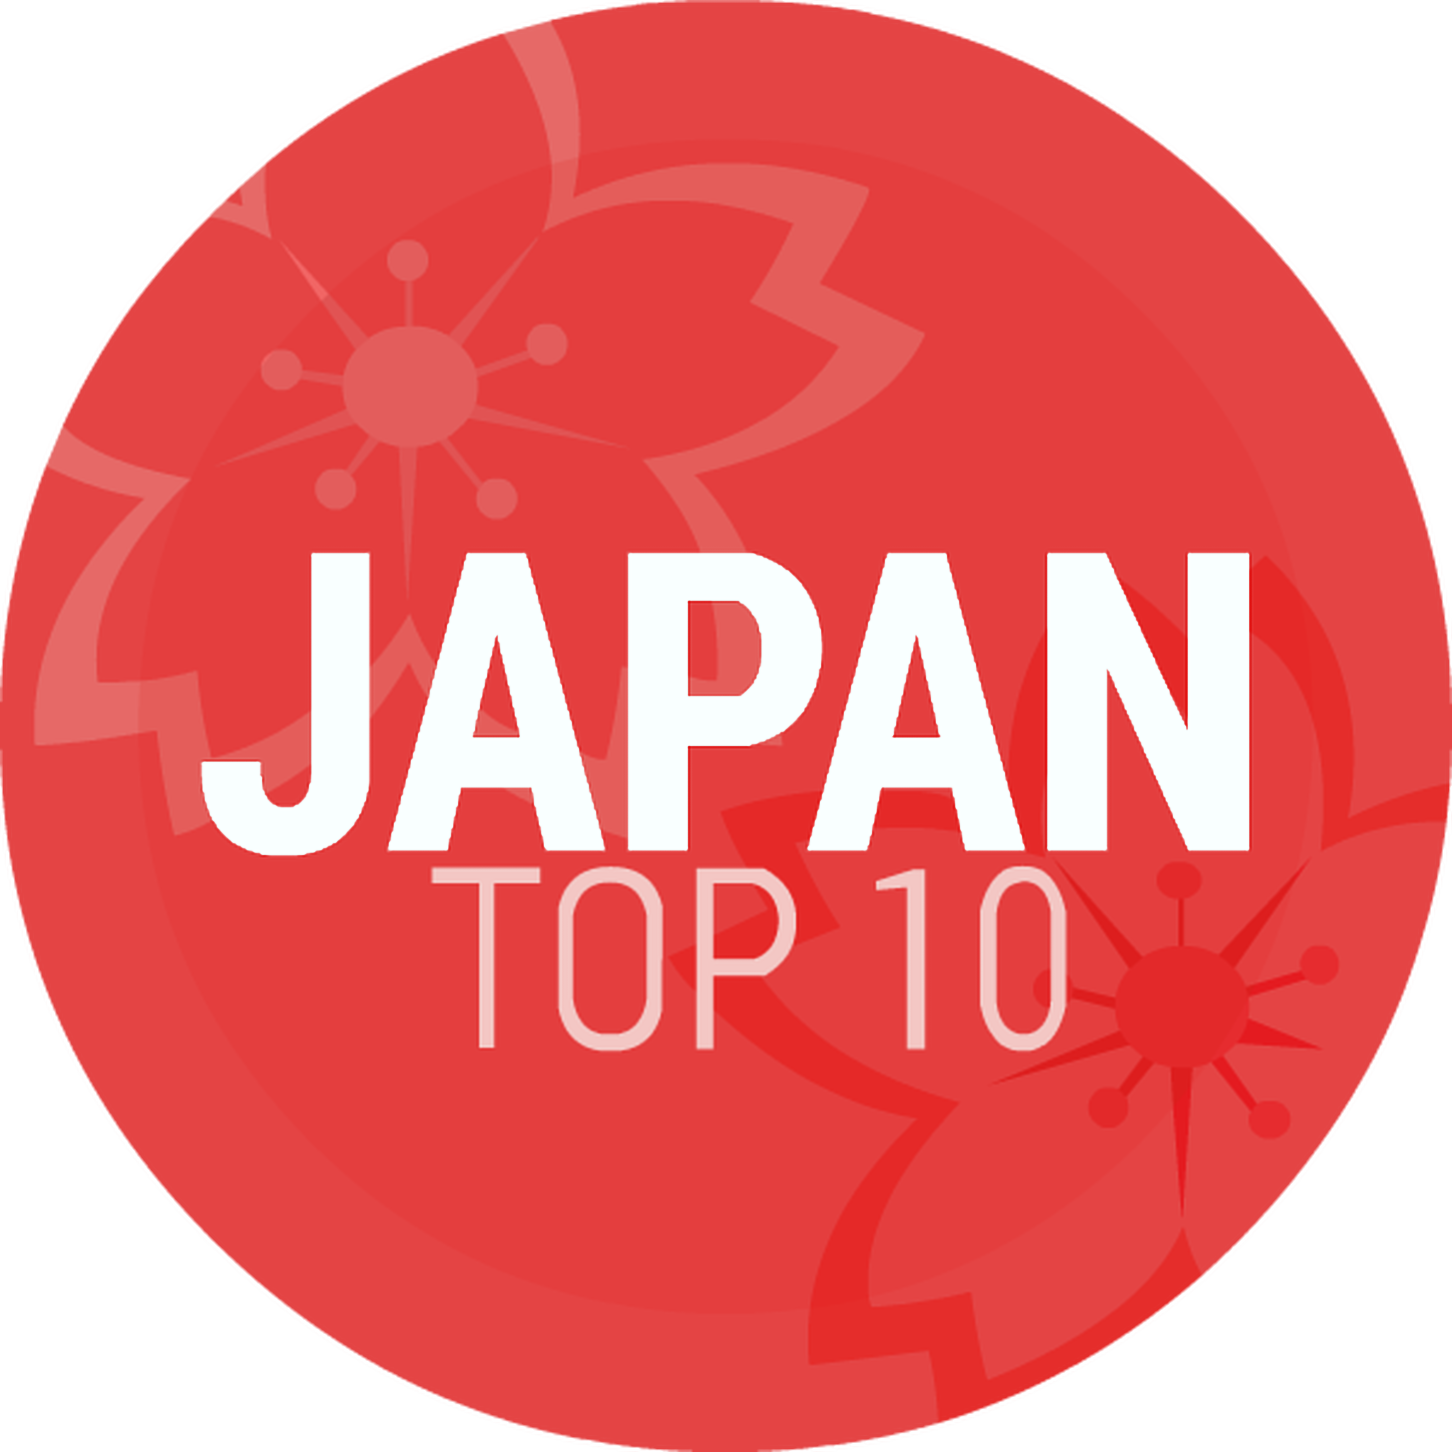 Episode 235: Japan Top 10 June 2018 Song of Month: Sukiyaki